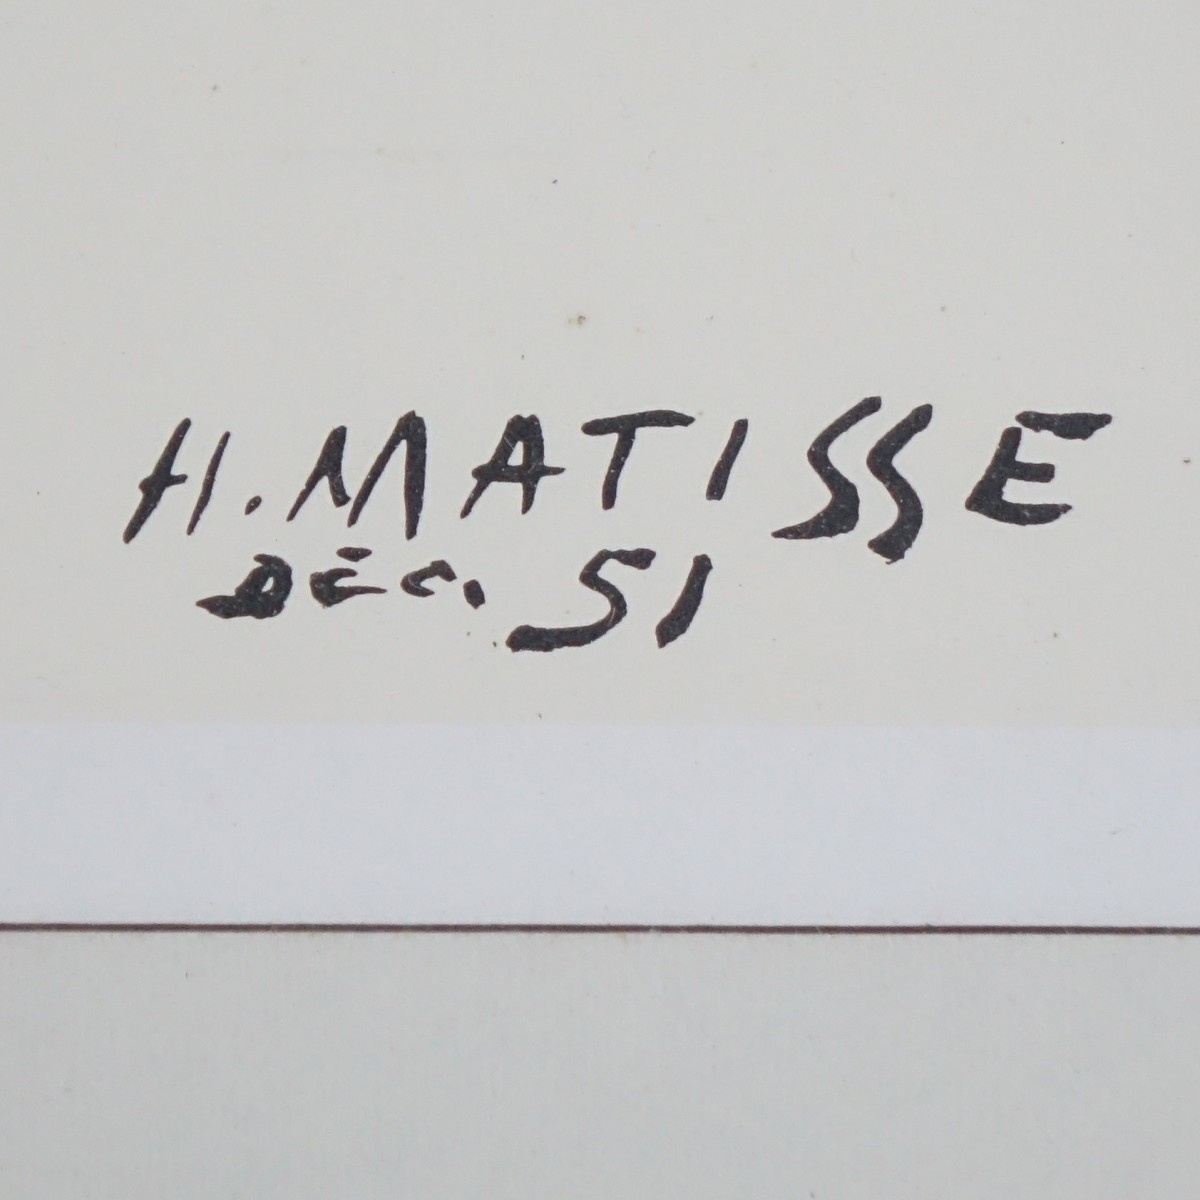 After: Henri Matisse (1869 - 1954)